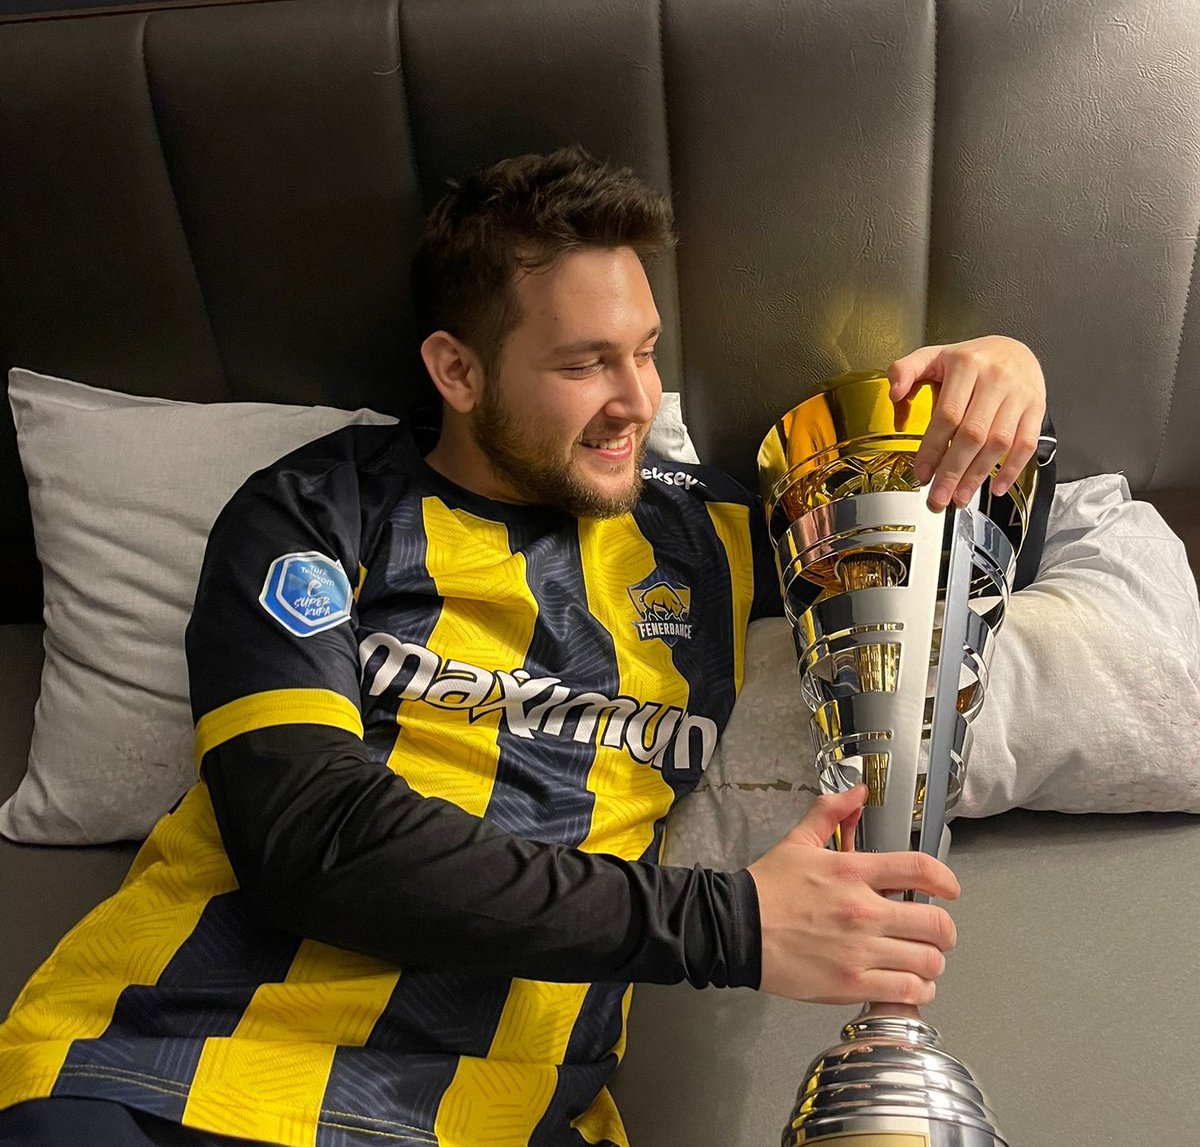 İyi geceler, Fenerbahçe ailesi. 💛💙